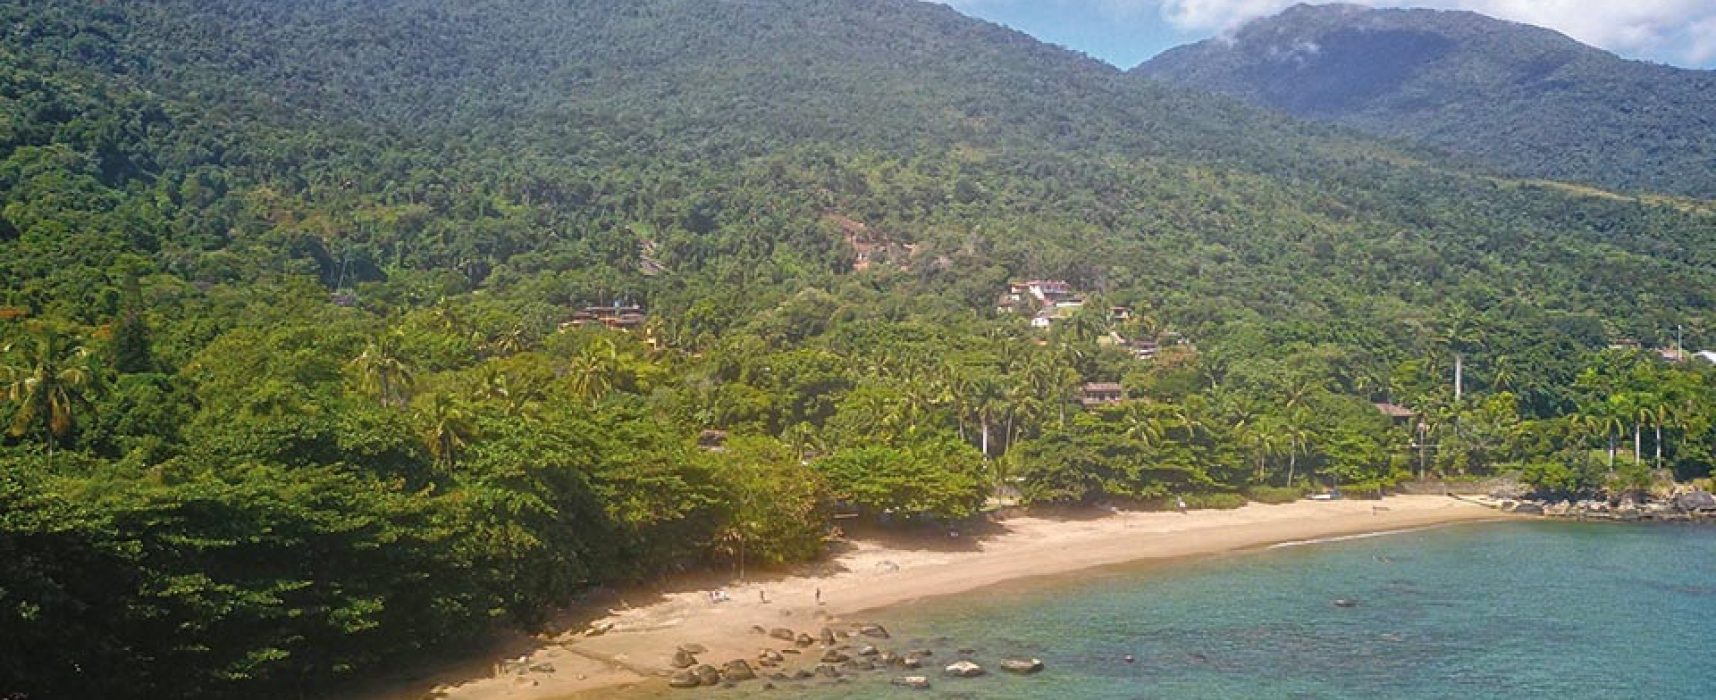 Praia do Julião foi cenário escolhido para nova série da Netflix